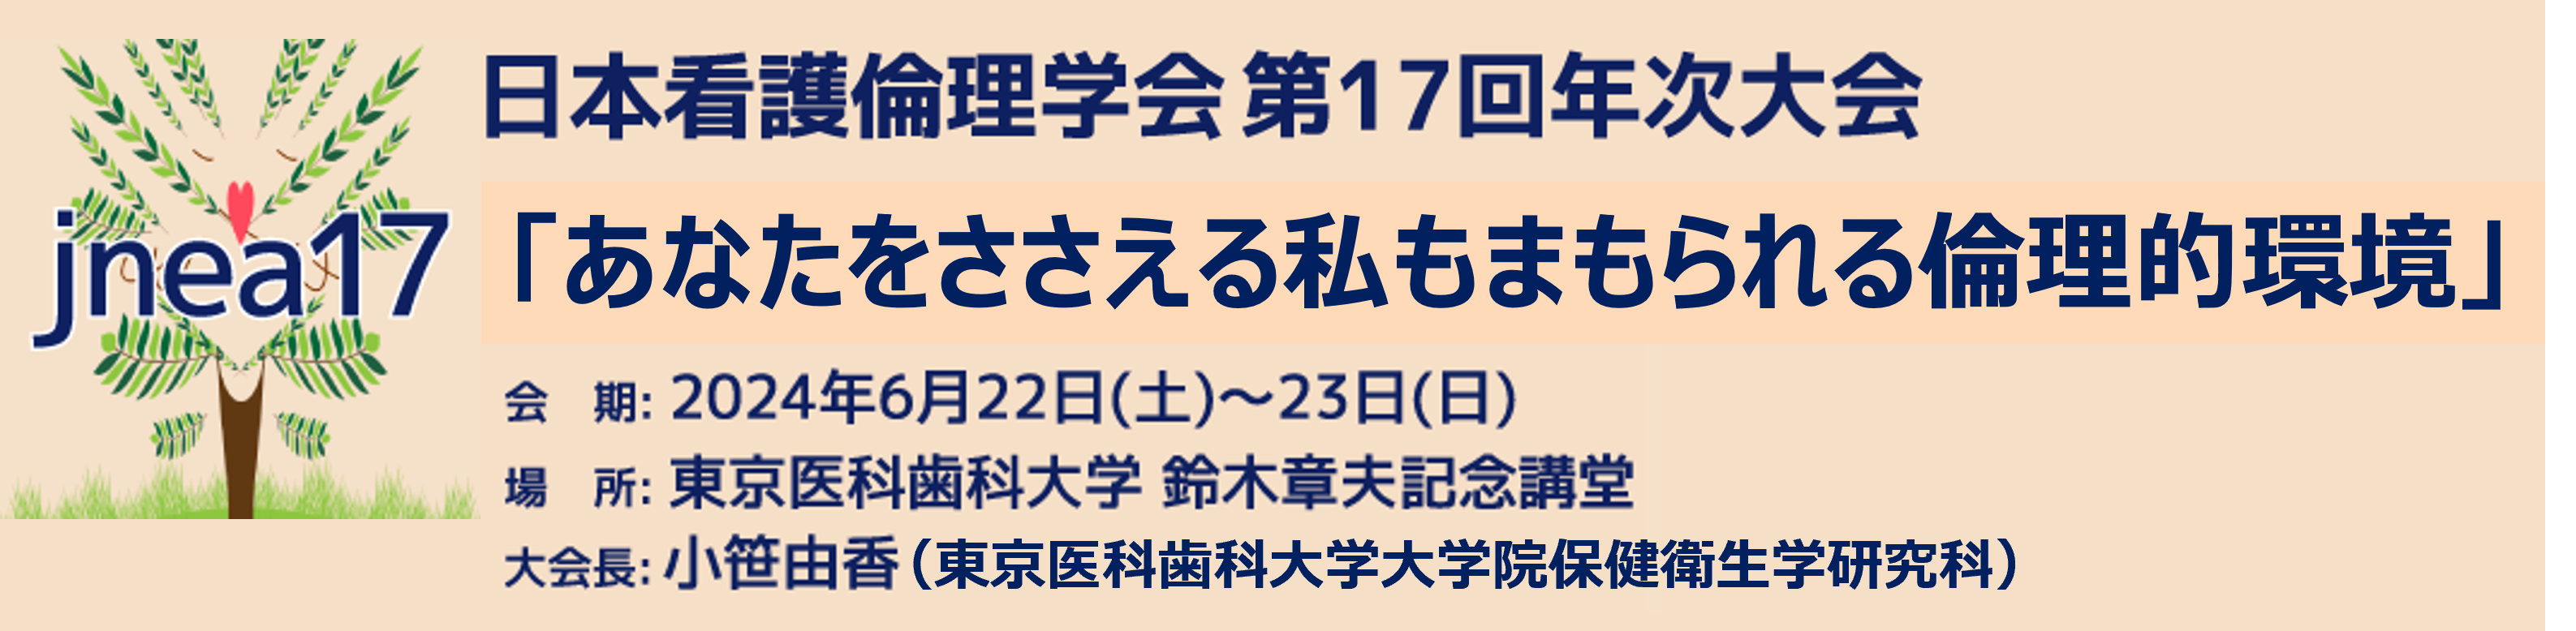 日本看護倫理学会第17回年次大会